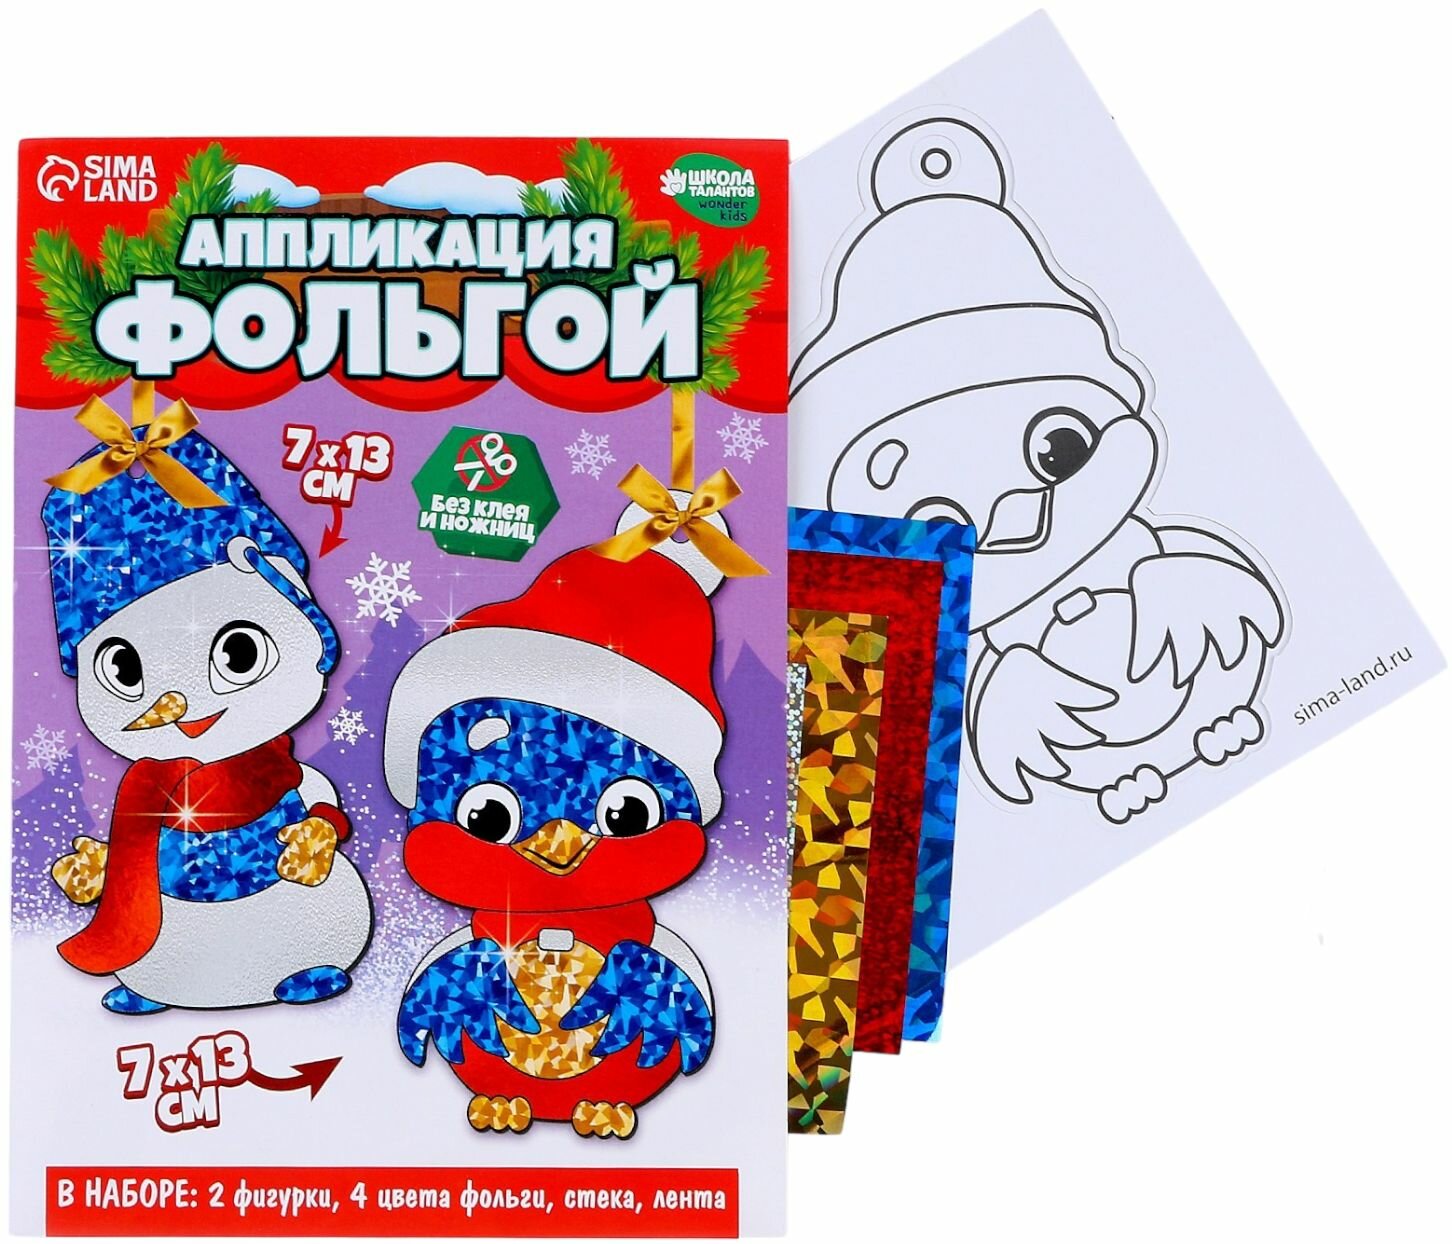 Аппликация фольгой "Снеговик со снегирем" для детей, набор для детского творчества с раскраской, подарок девочке или мальчику